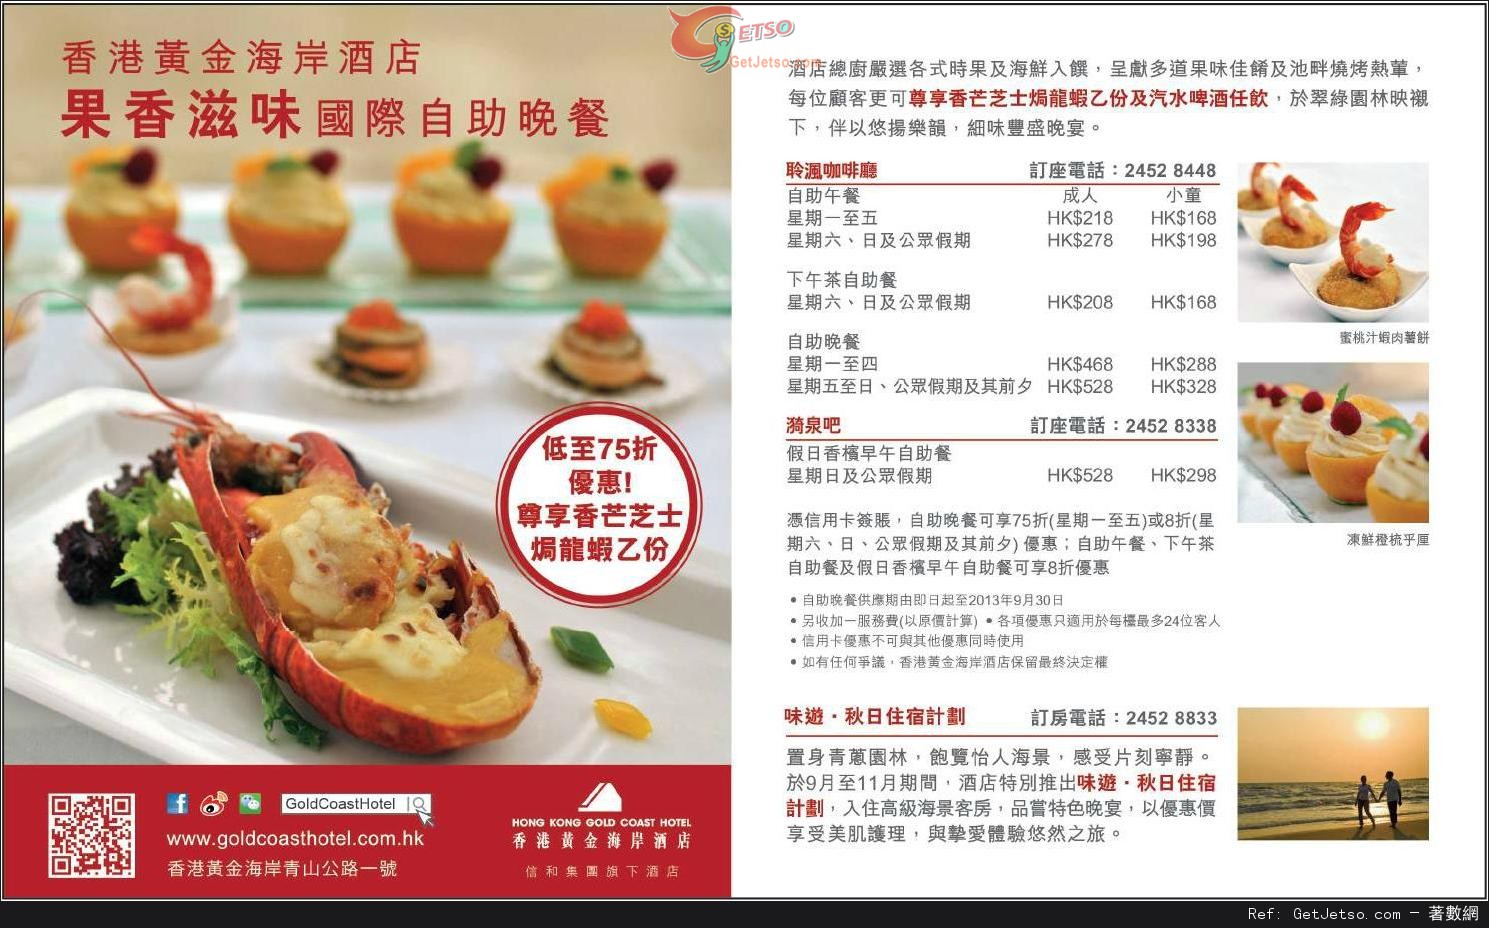 信用卡享香港黃金海岸酒店果香滋味國際自助餐低至75折優惠(至13年9月30日)圖片1